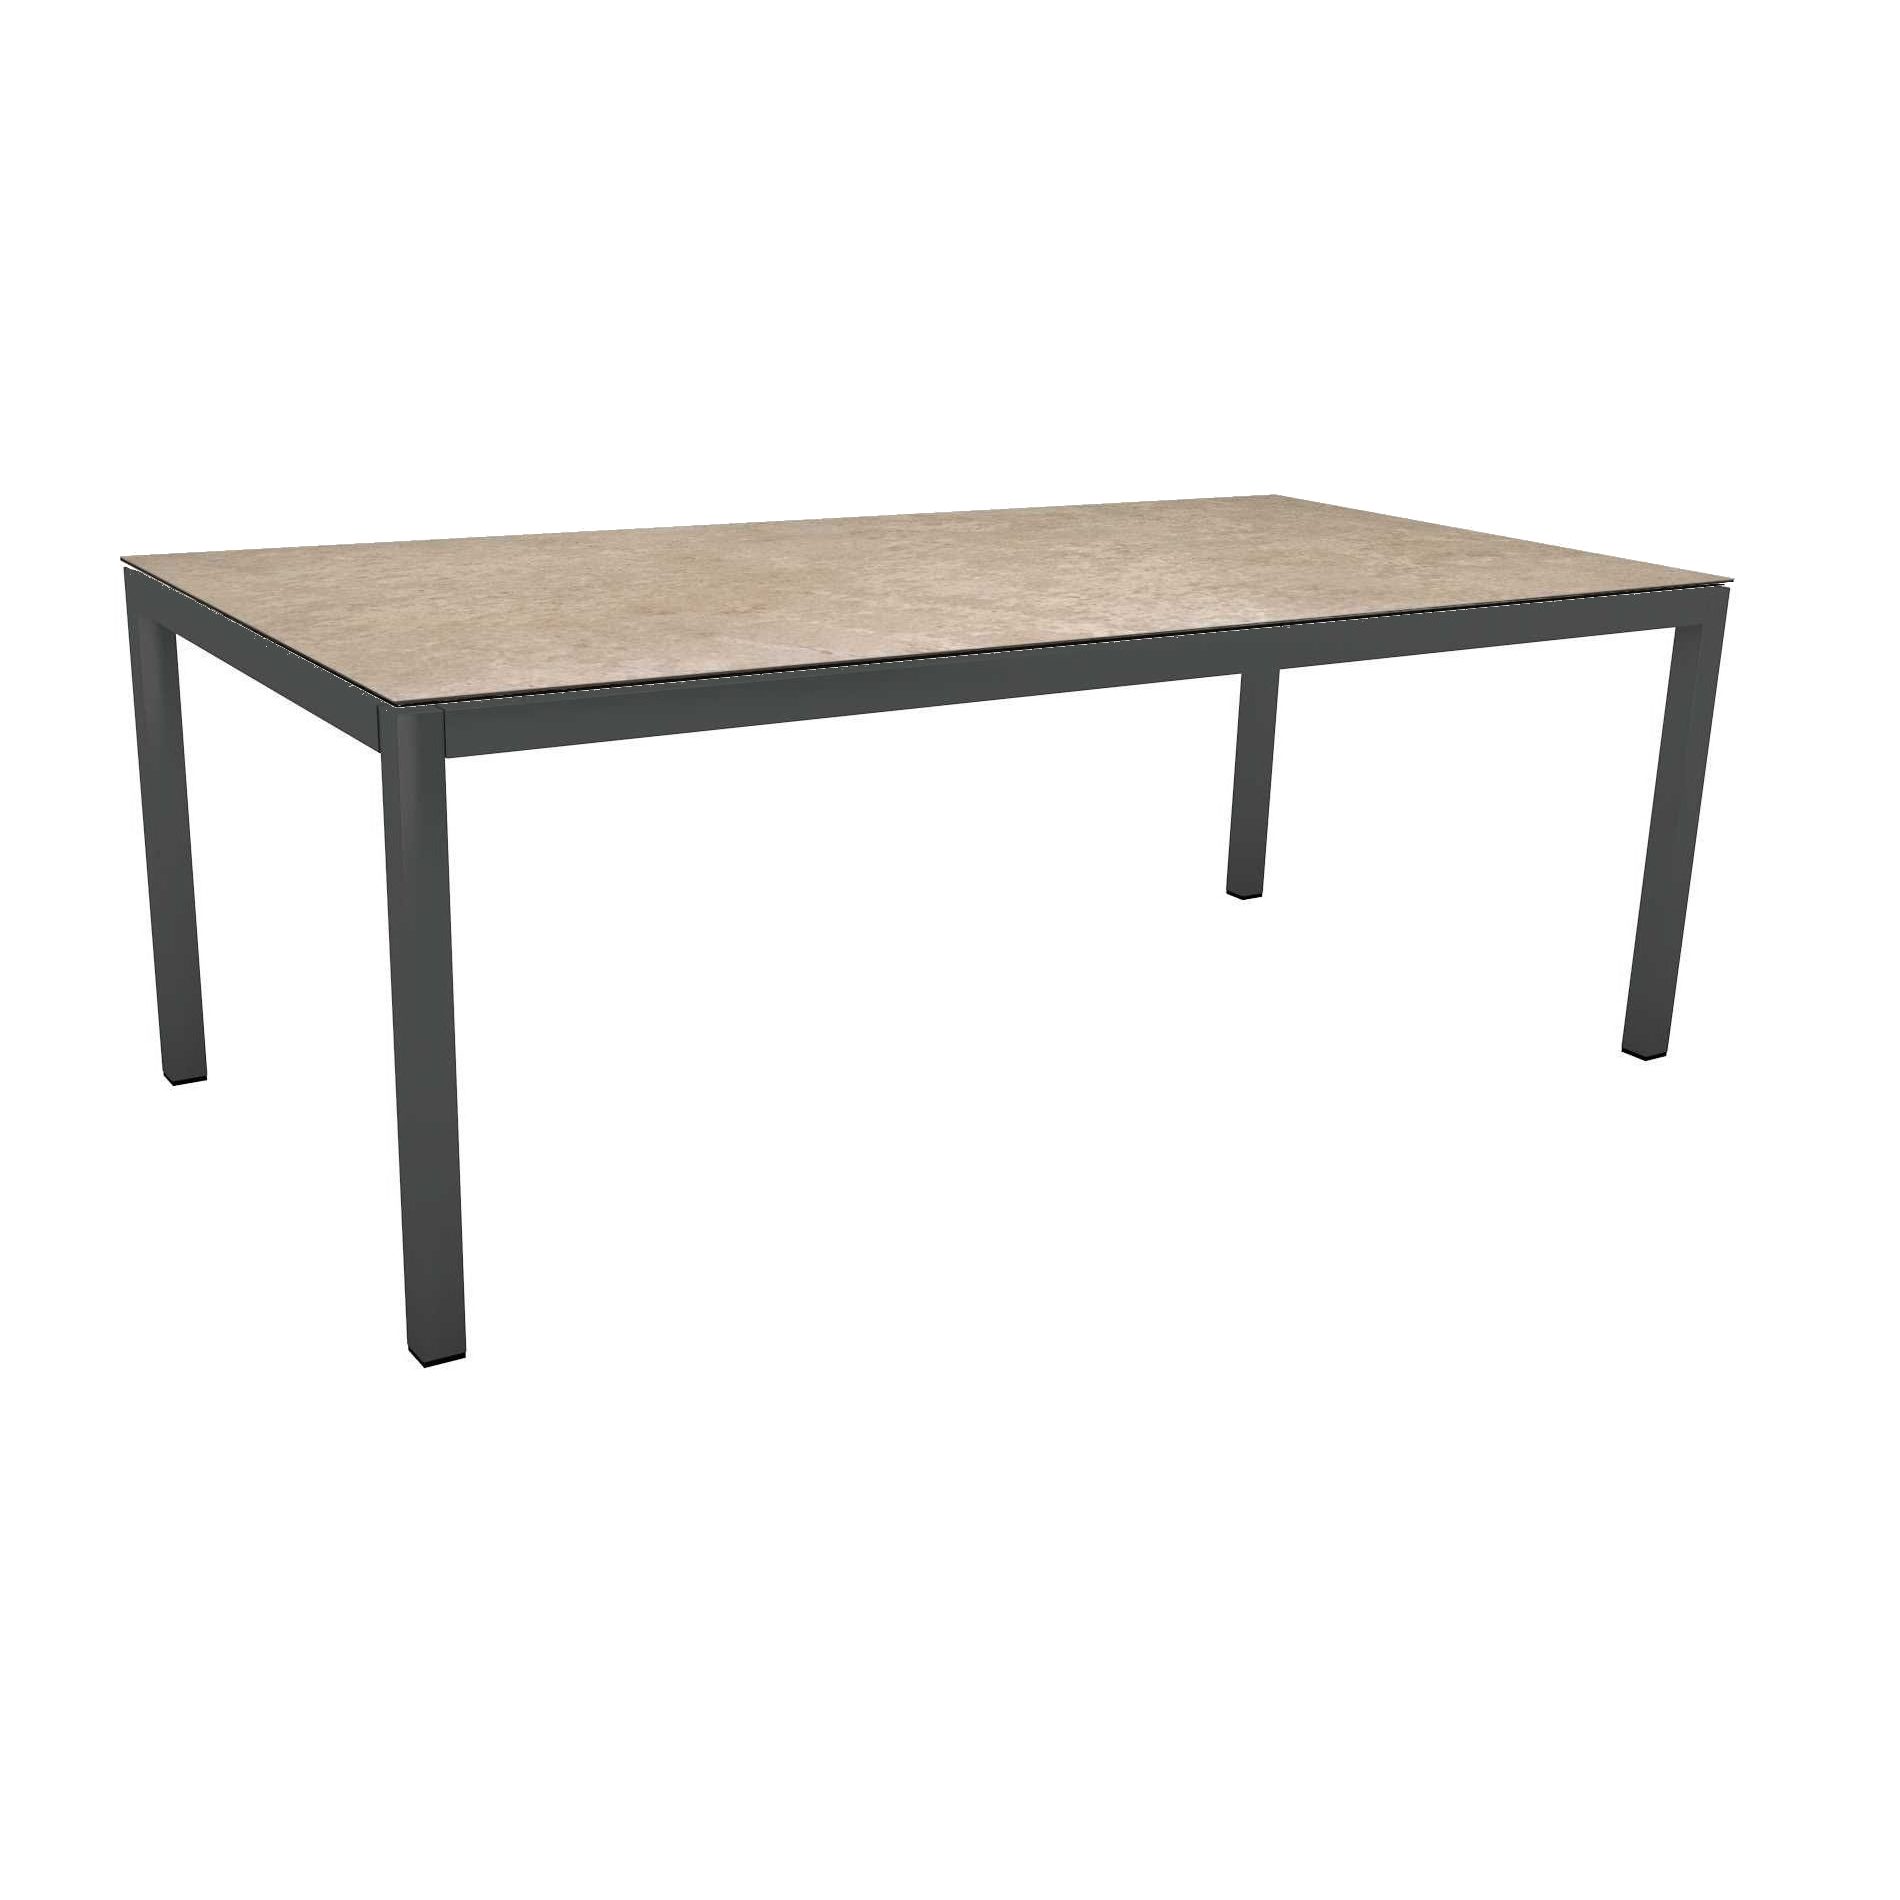 Stern Tischsystem, Gestell Aluminium anthrazit, Tischplatte HPL Vintage Shell, Größe: 200x100 cm